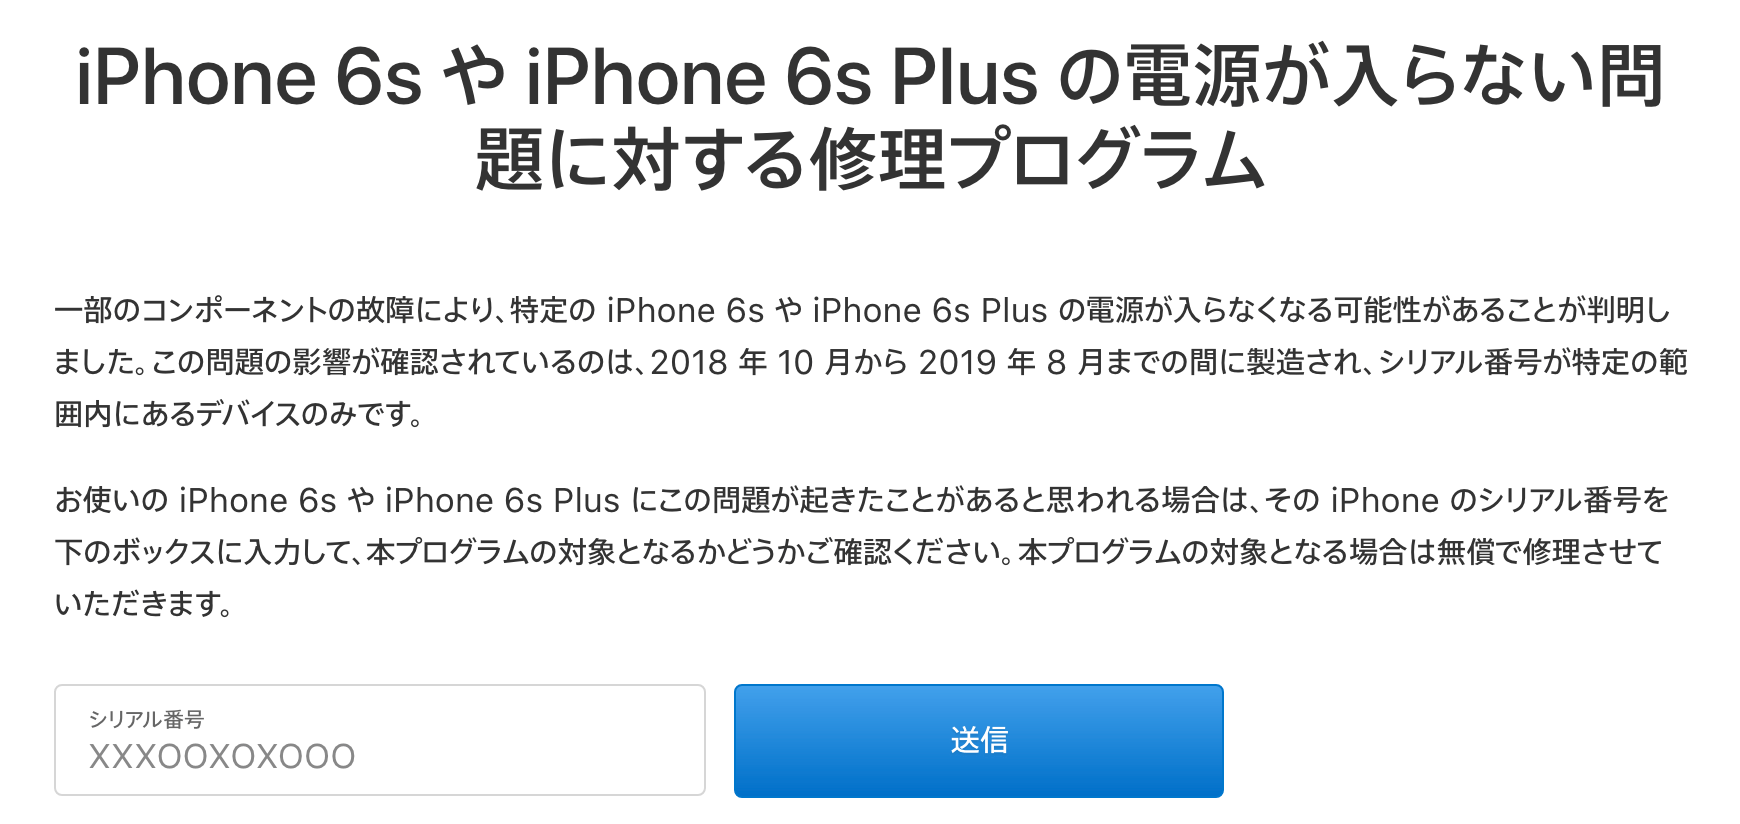 iPhone 6s、iPhone 6s Plus修理プログラム